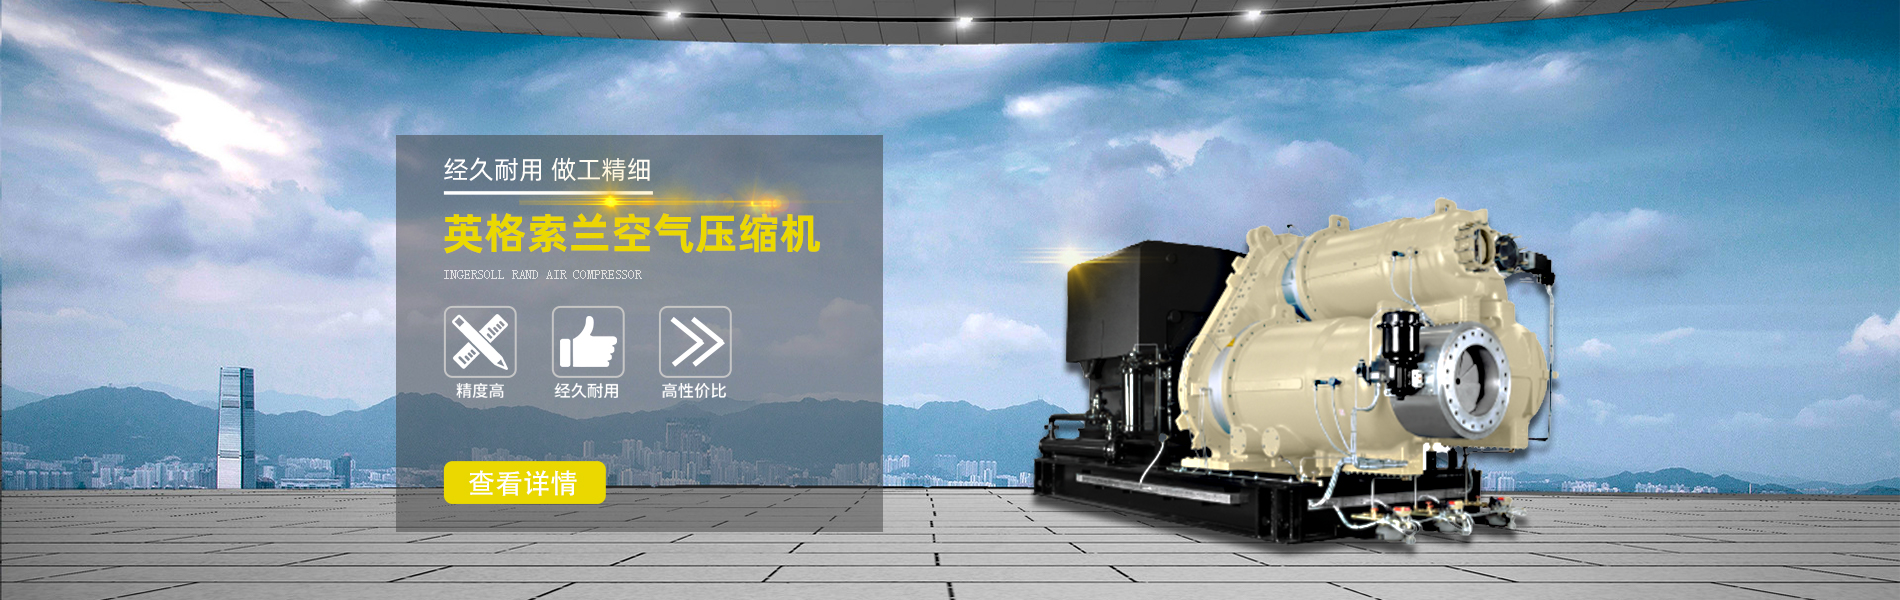 天津華盟艾爾壓縮機有限公司